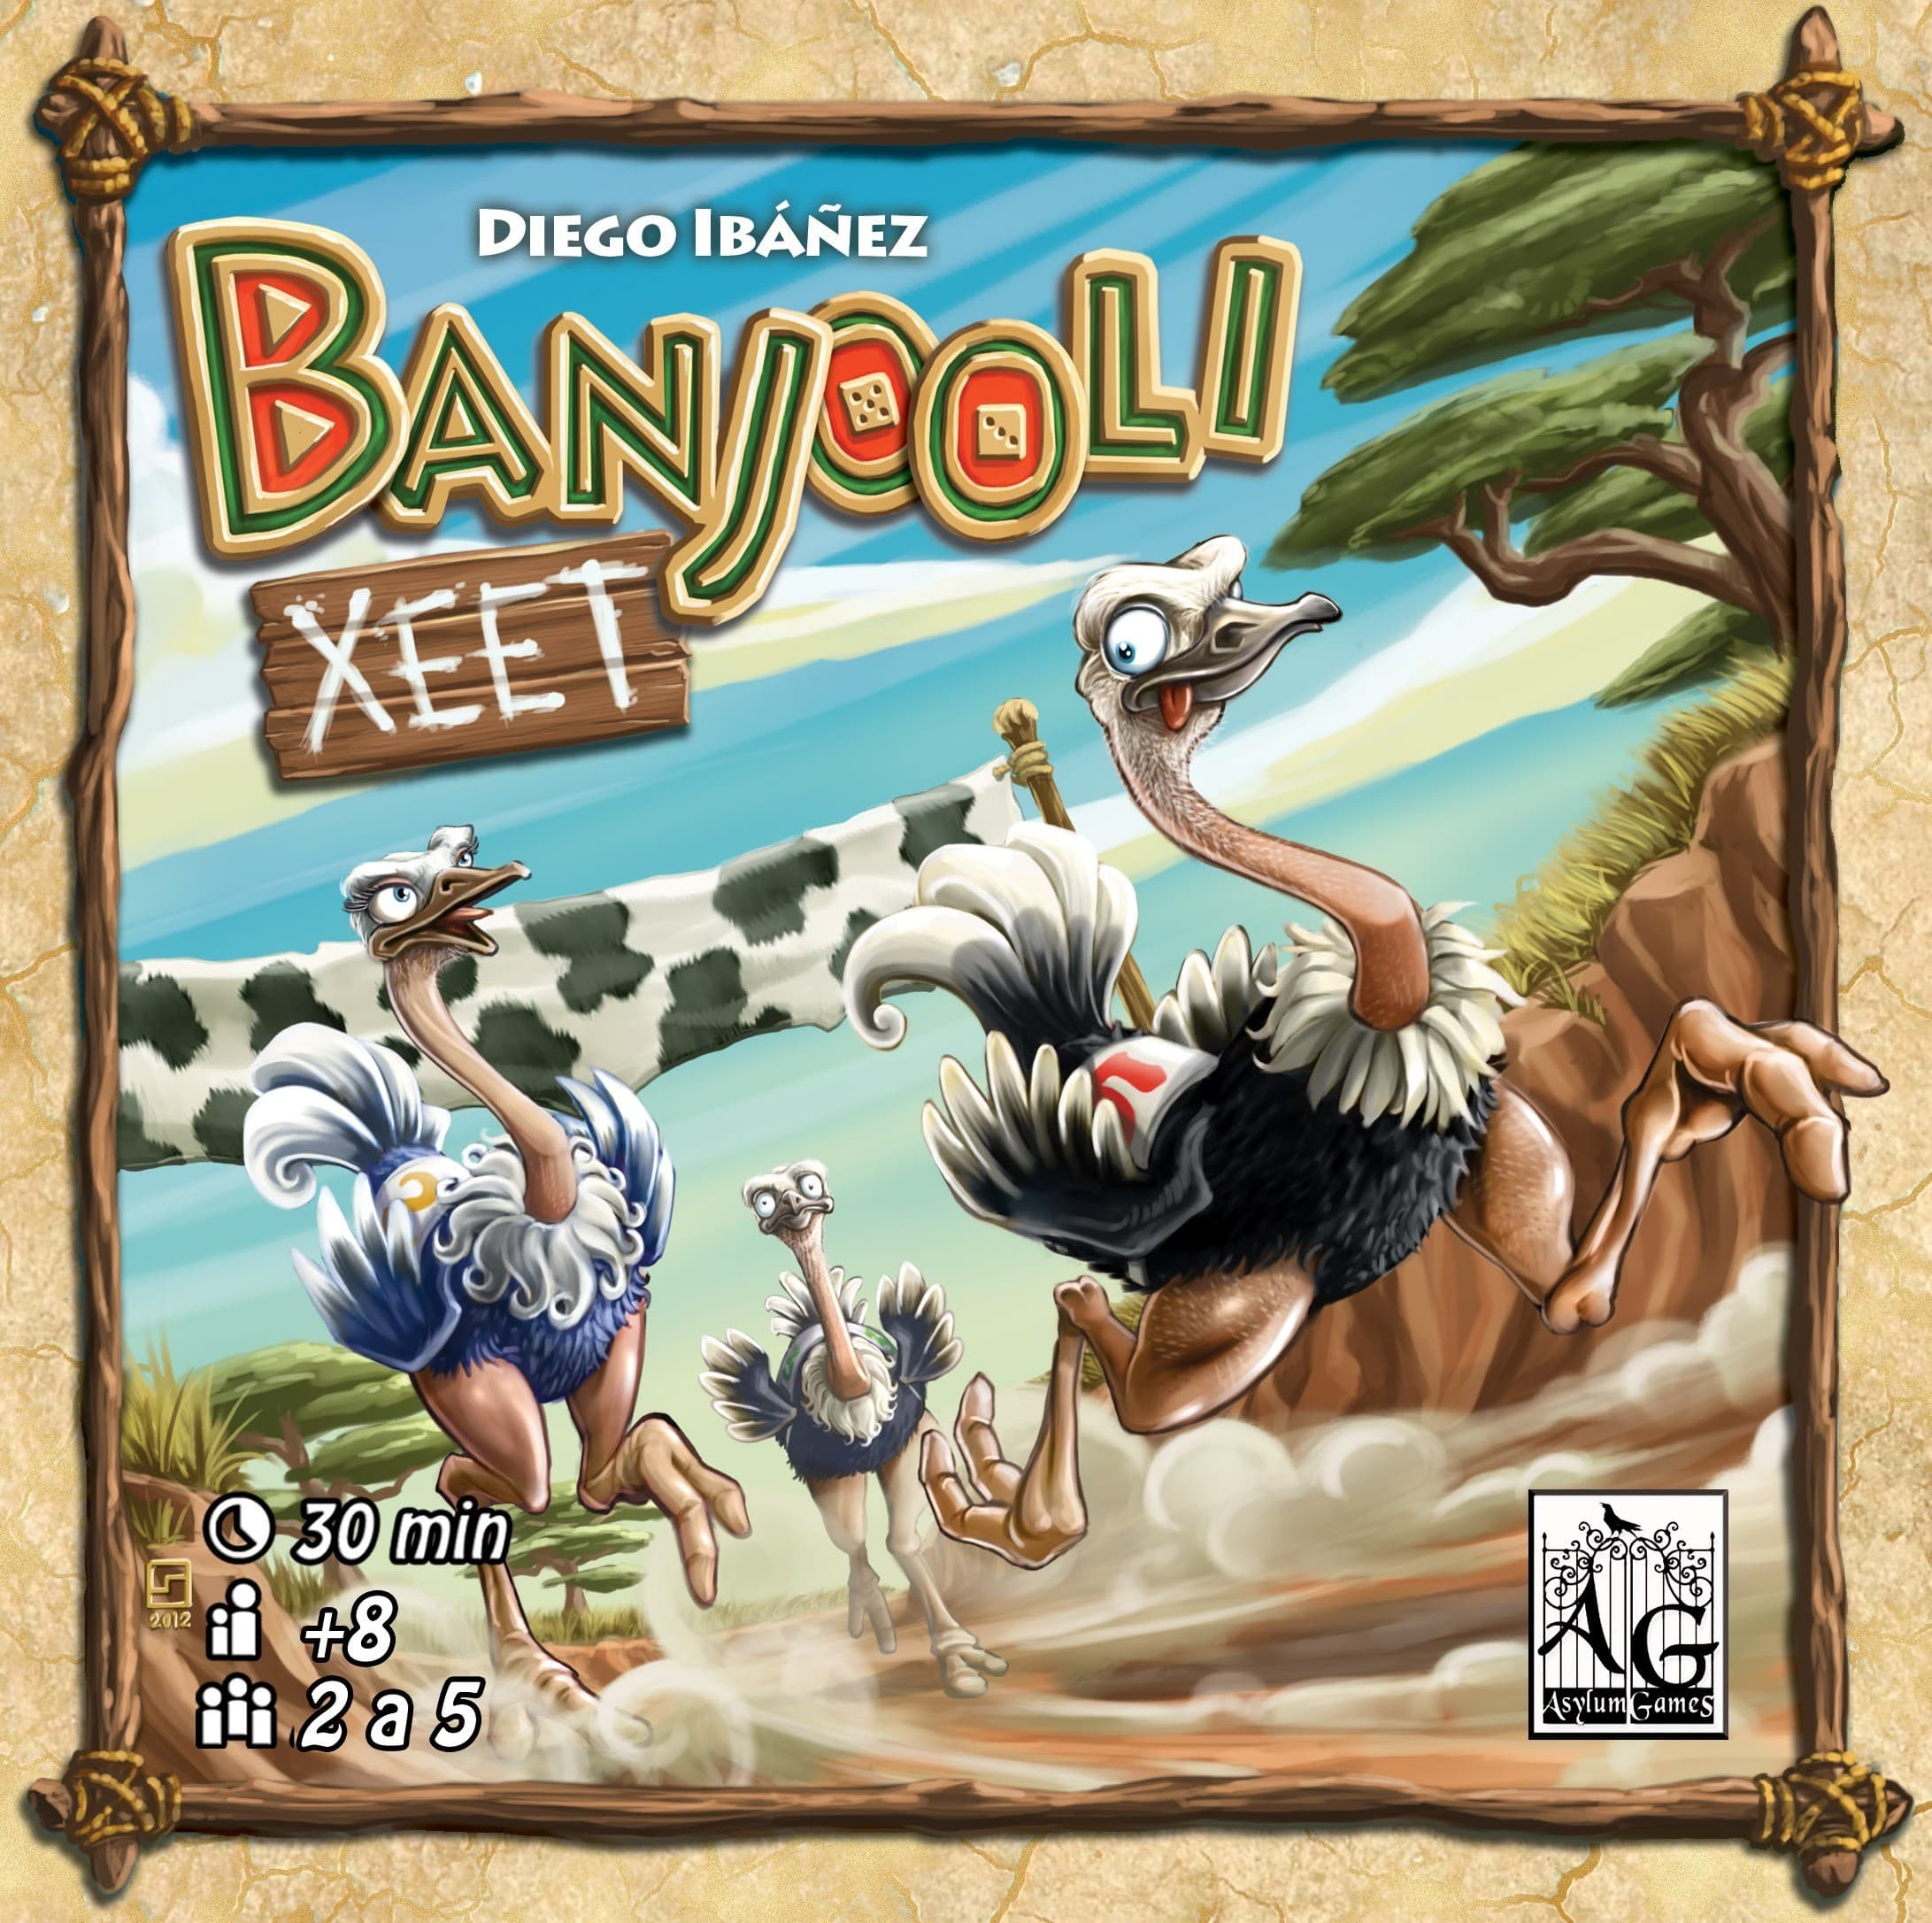 Banjooli Xeet, la course d'autruche à l'espagnol